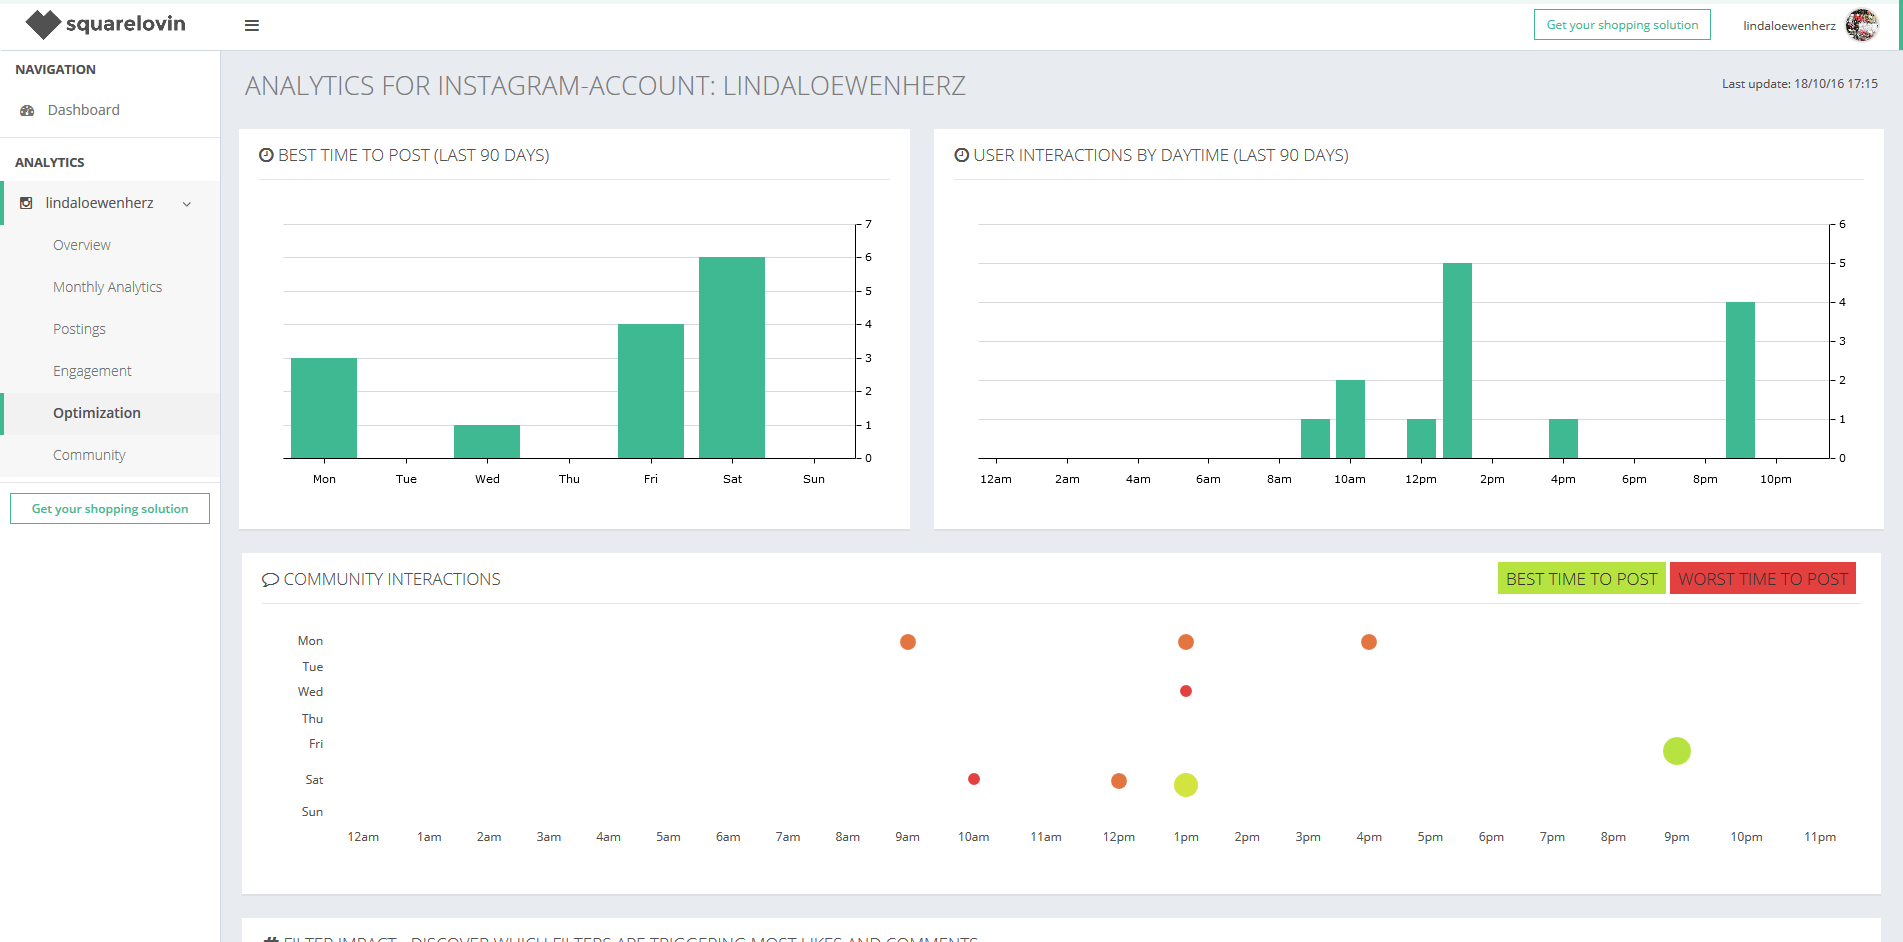 Riepilogo dei risultati di analisi su Squarelovin